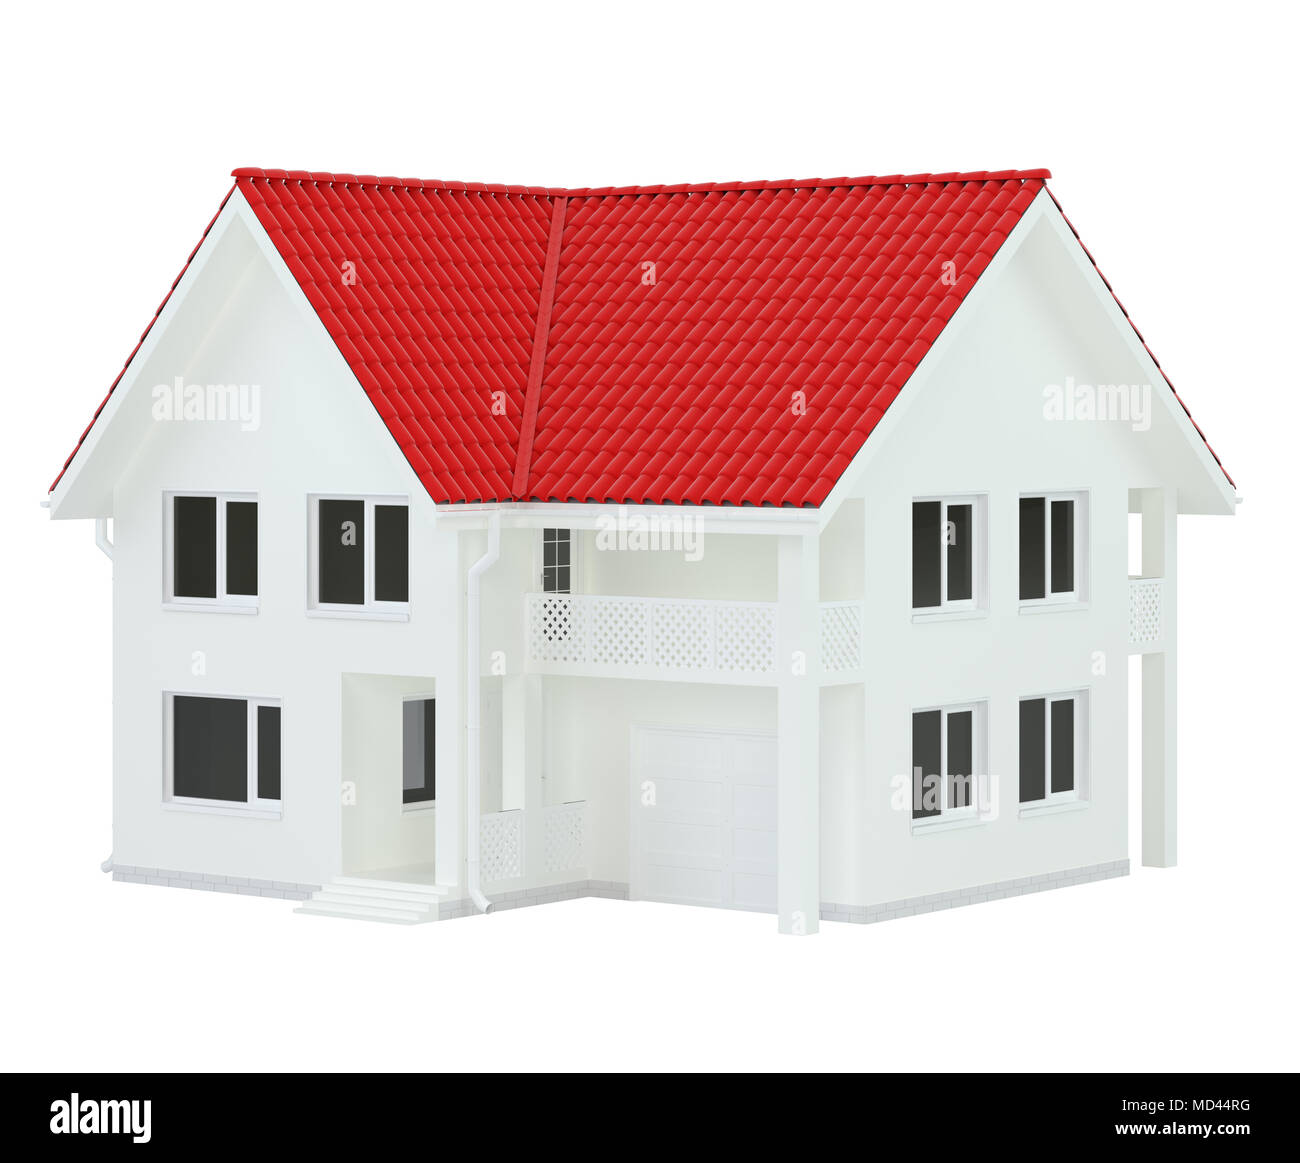 Haus modernen, zeitgenössischen Stil mit roten Dach auf weißem Hintergrund. 3D-Rendering. Stockfoto